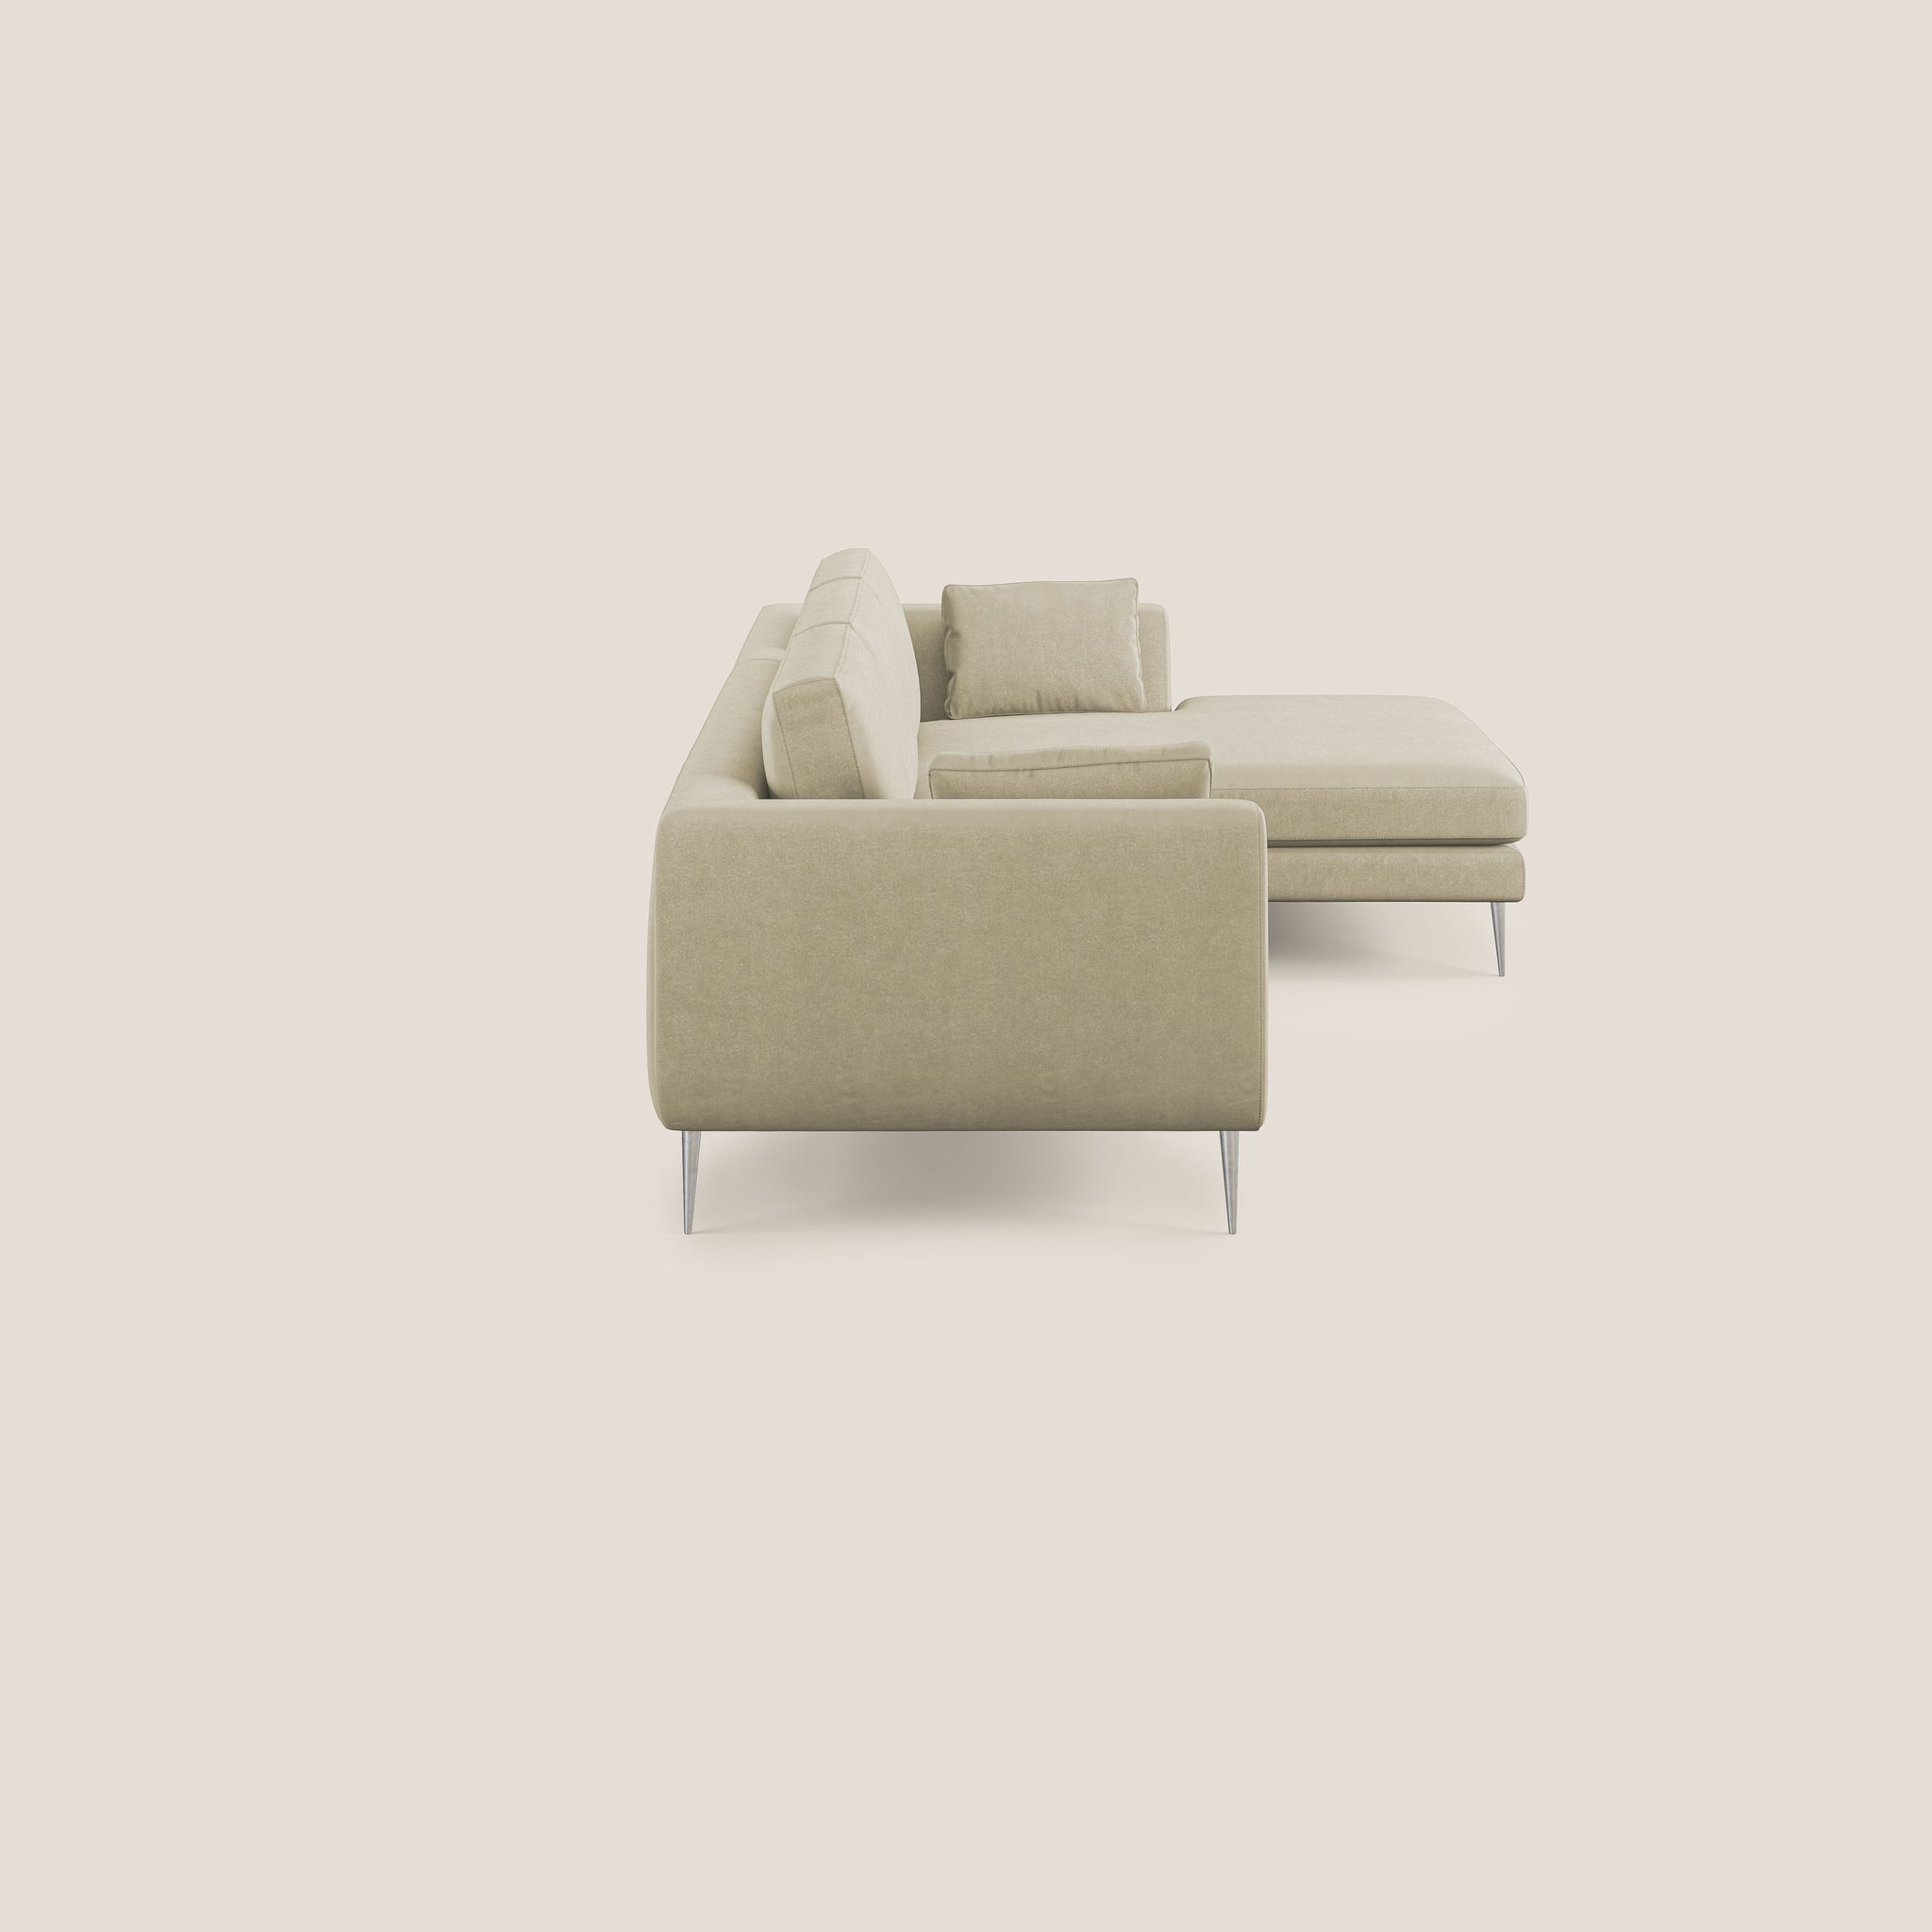 Plano divano moderno angolare con penisola in microfibra smacchiabile T11